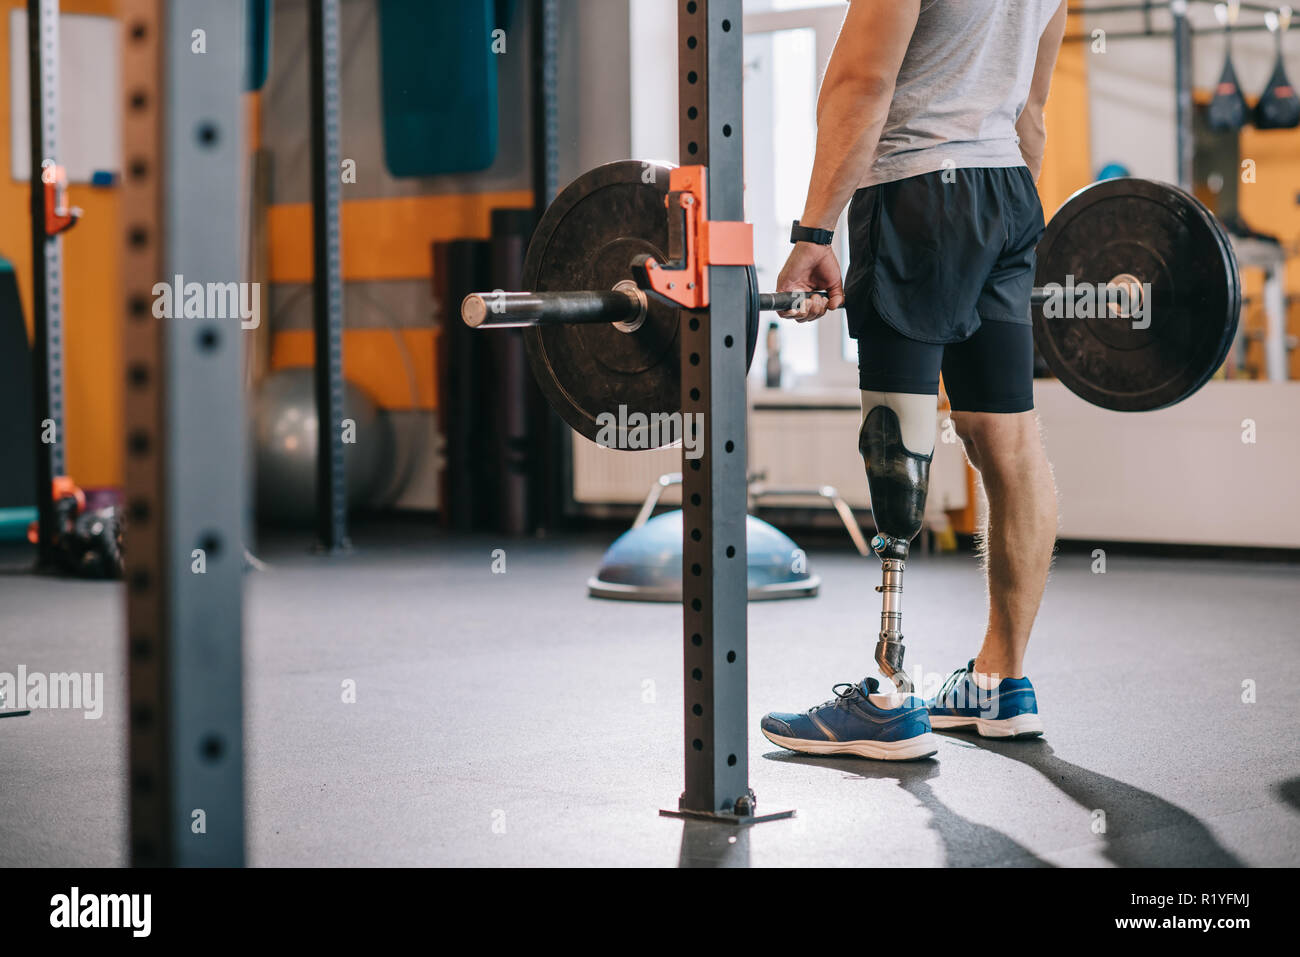 7/8 Schuß des Kraftsportlers mit künstlichen Bein arbeiten mit Langhantel  im Fitnessstudio Stockfotografie - Alamy